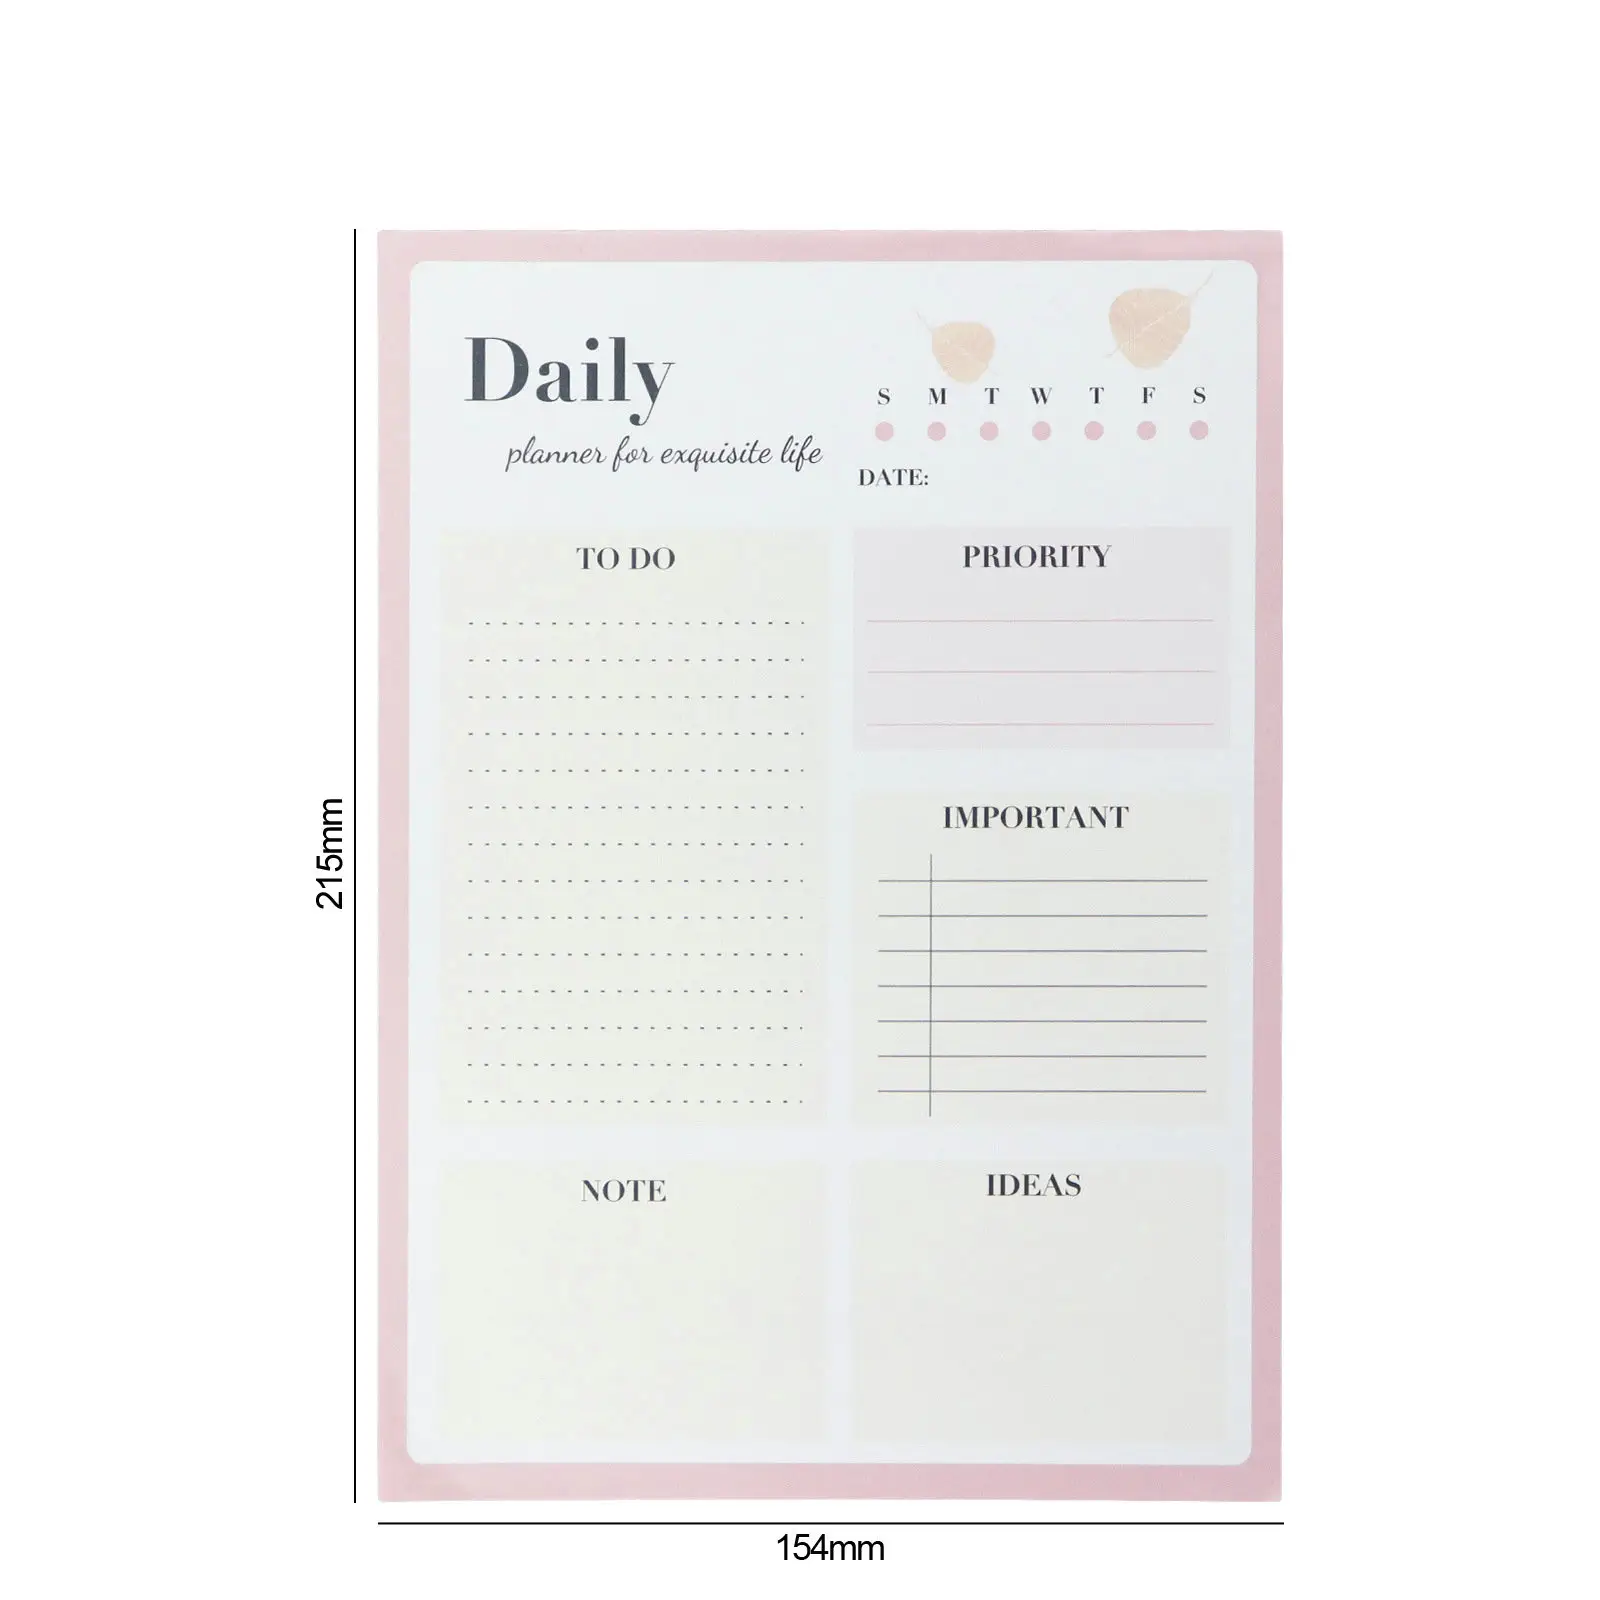 لوحة مذكرة للتخطيط اليومي مع جدول أعمال يومي ولوحة مذكرة للتخطيط الأسبوعي